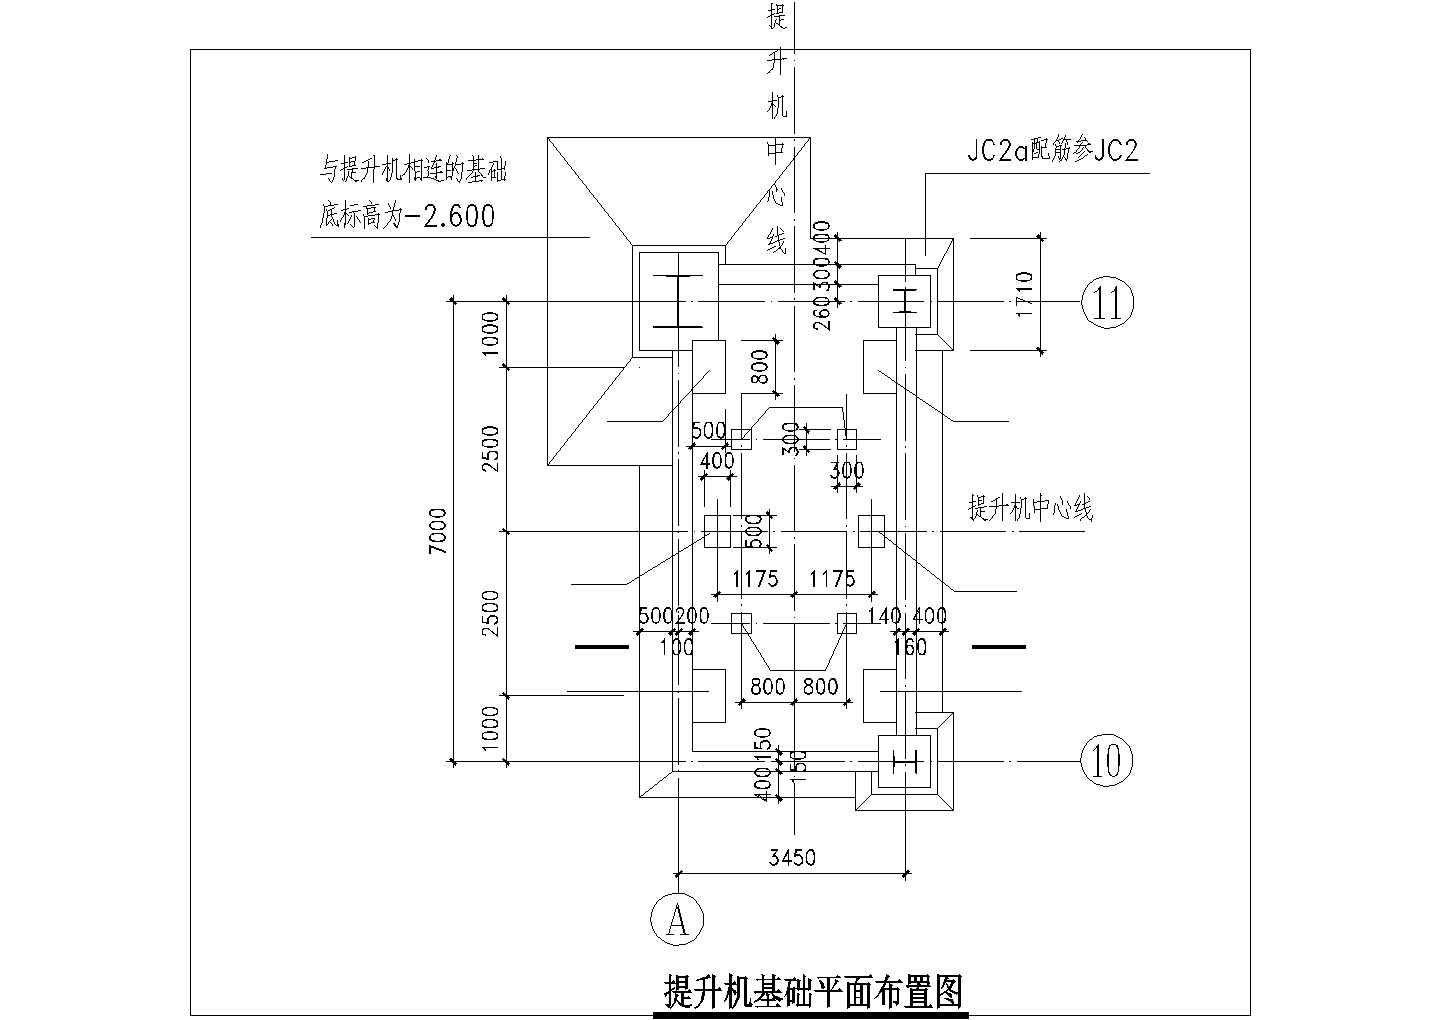 马自达4s汽车专买店钢结构cad设计施工详细图纸